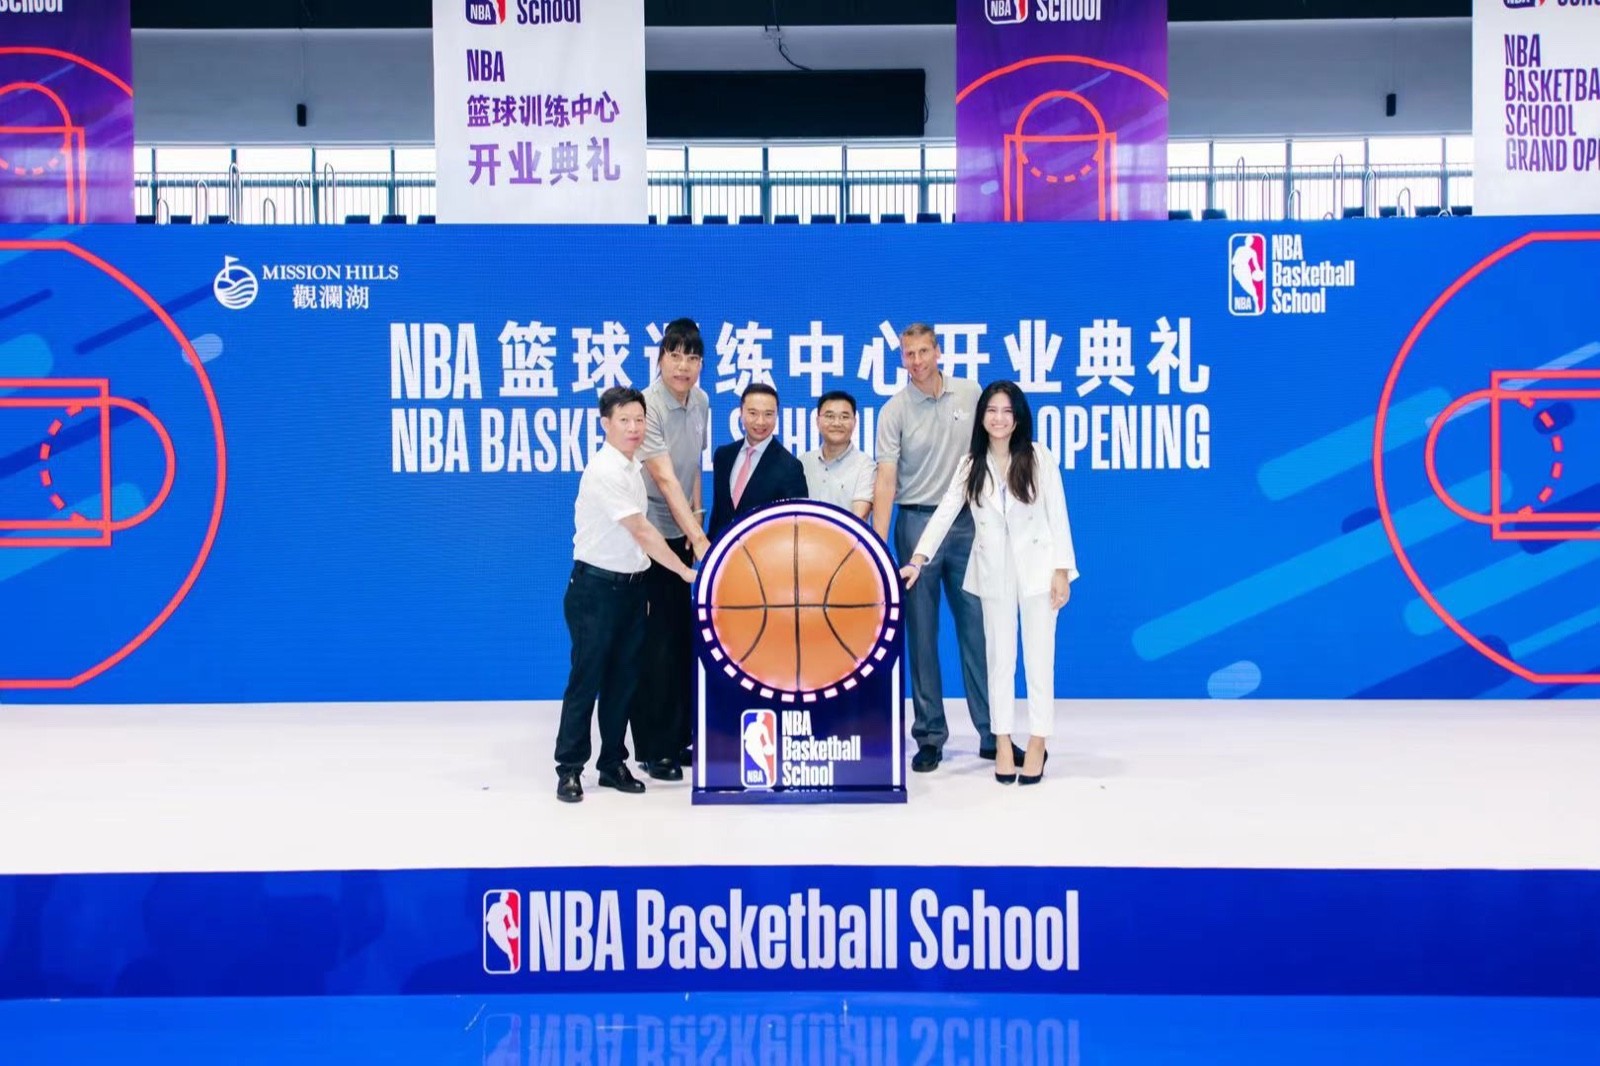 双色球
正式揭幕首个NBA篮球训练中心